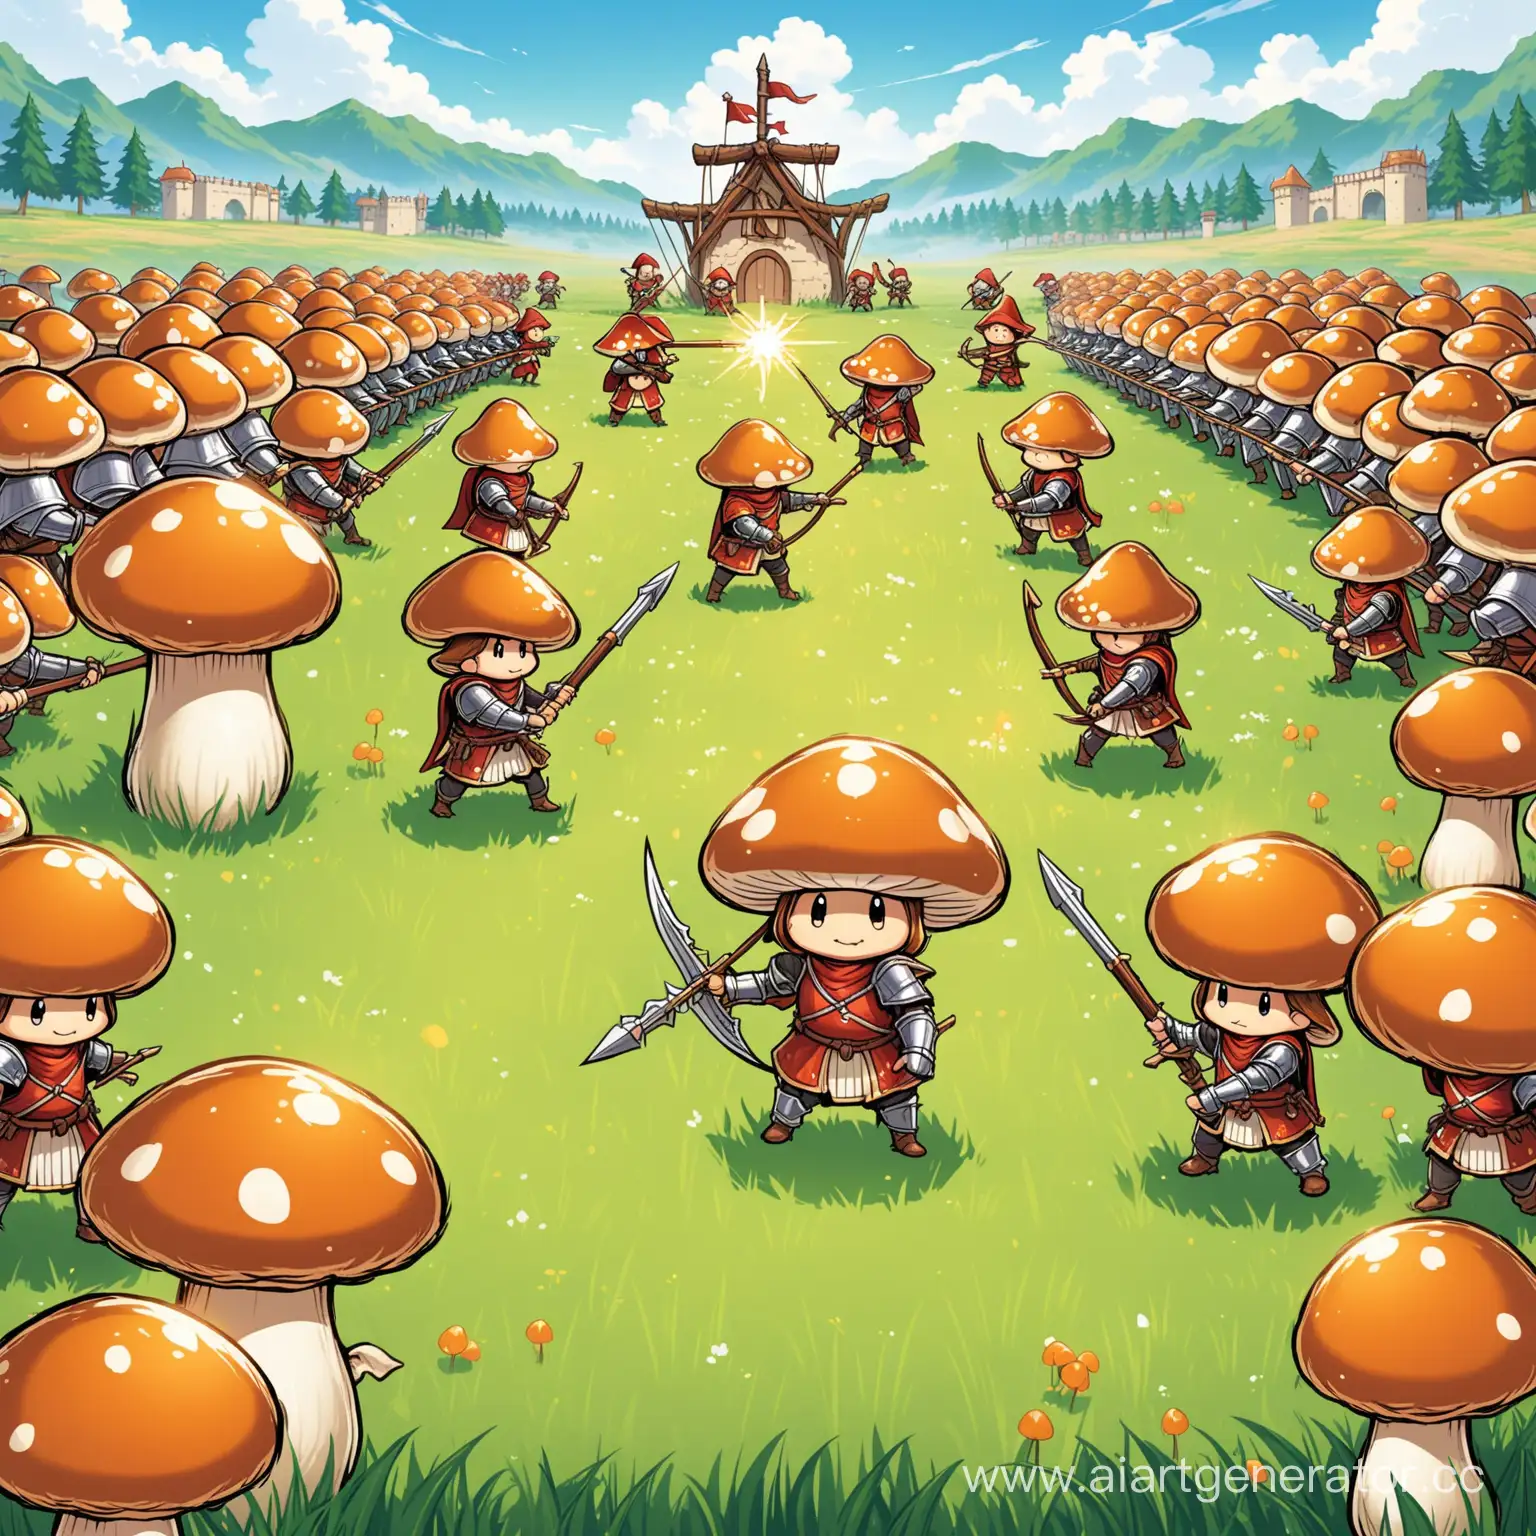 5-6 грибочков на фоне дерутся между собой они лучники маги воины арбалетчики рыцари, в центре стоит грибочек похожий на абрикос с луком
